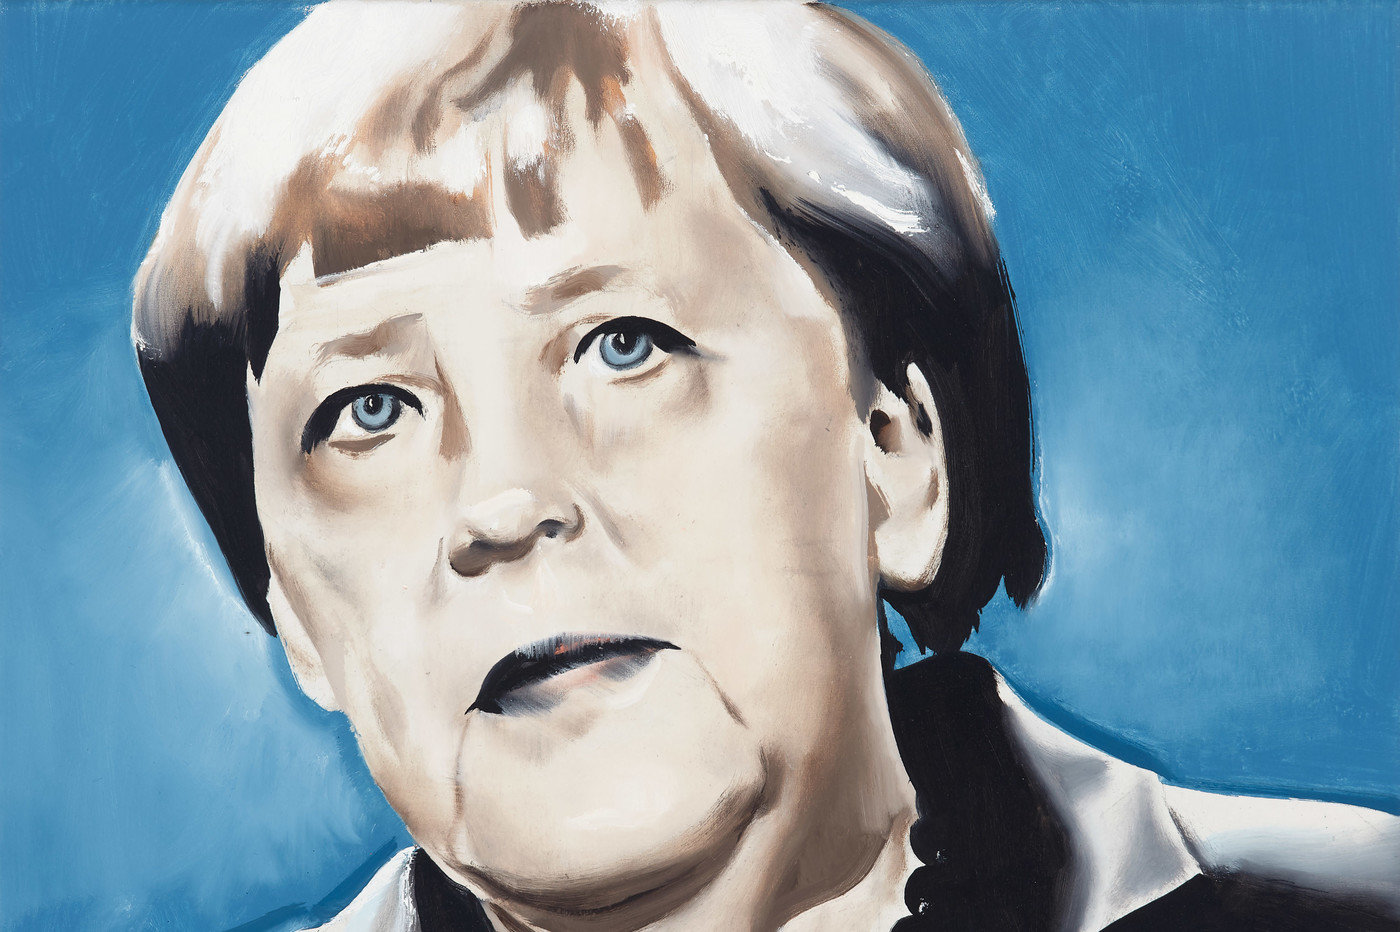 Angela Merkel 2 (2016) by Wilhelm Sasnal